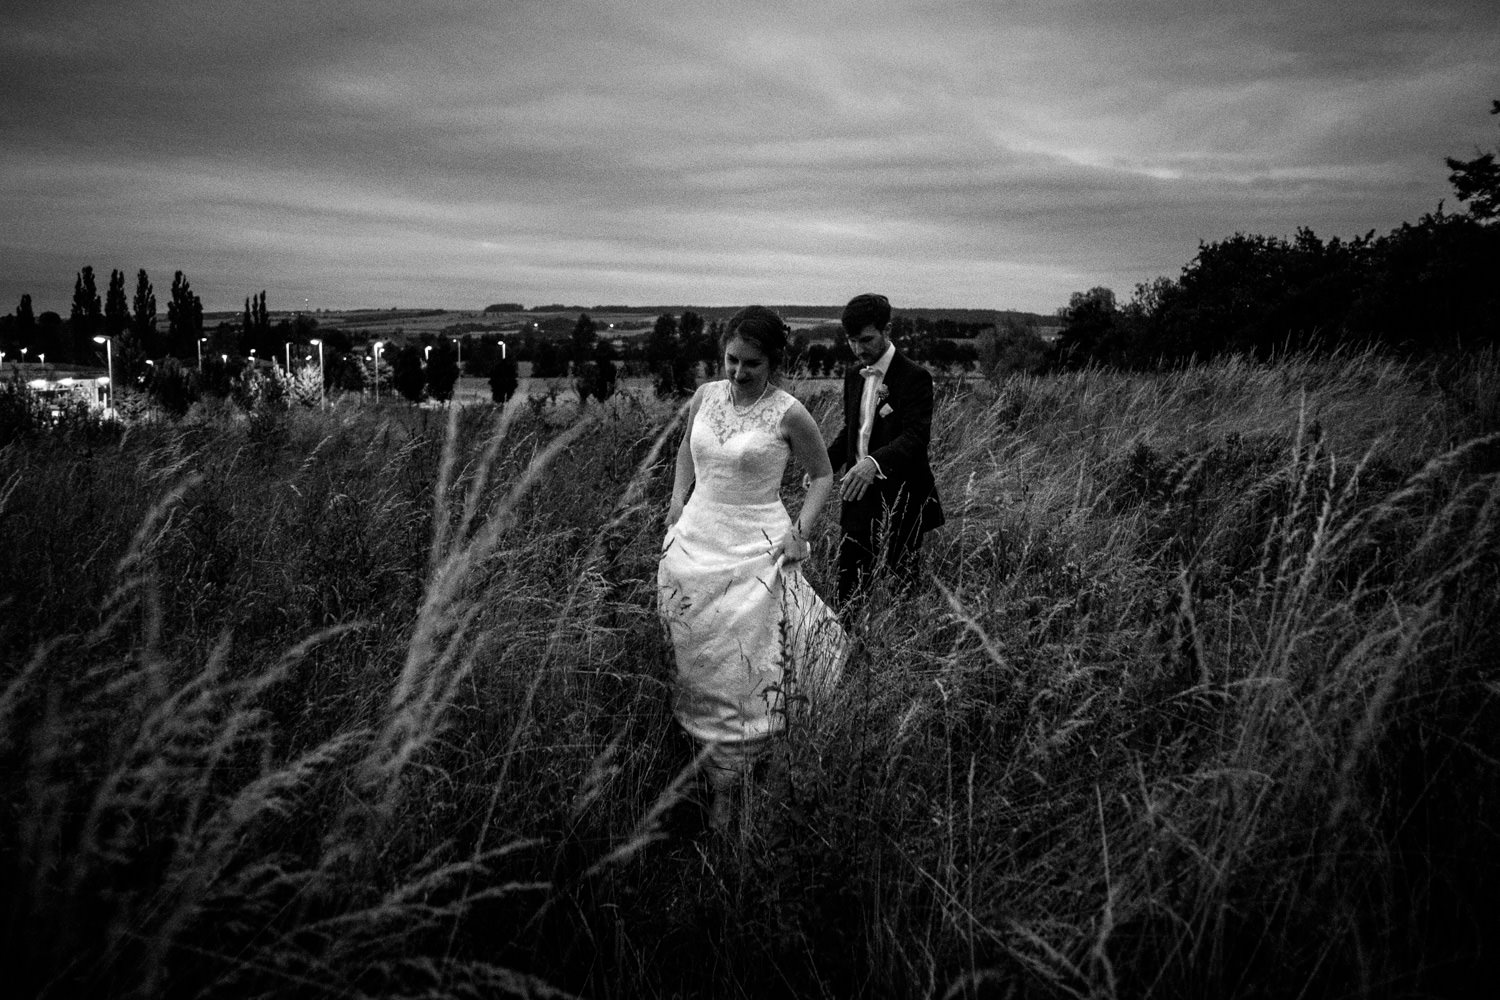 Zelthochzeit-Inspiration-Hochzeitsreportage-natürlich-Hessenhof-Coburg-Oberfranken-Aachen-Hochzeitsfotograf-Kevin Biberbach-KEVIN Fotografie-Junebug-Hochzeitswahn-133.jpg